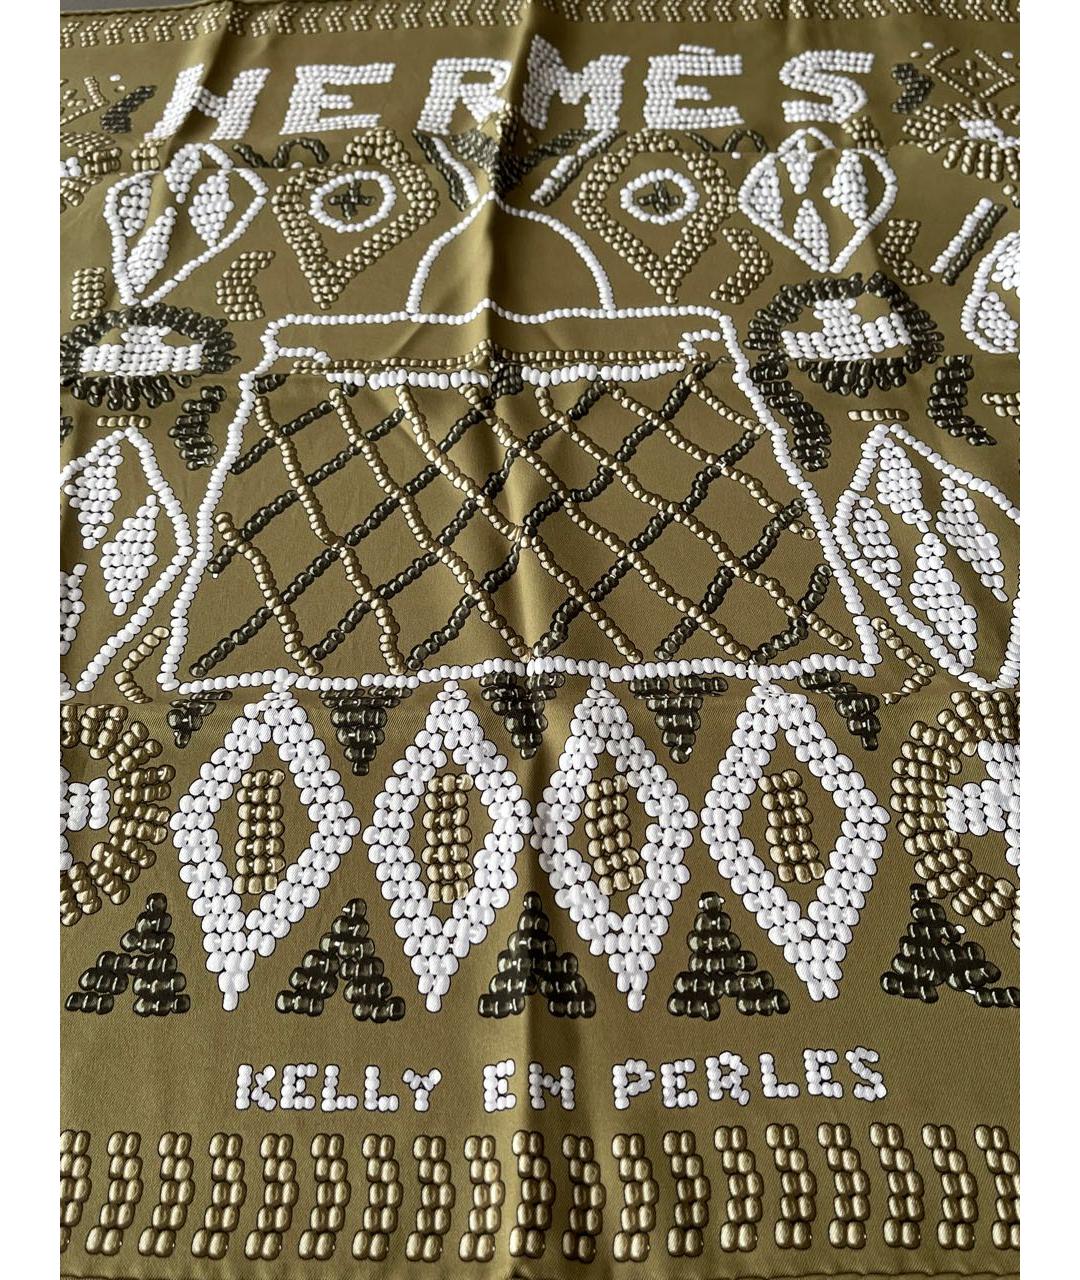 HERMES PRE-OWNED Зеленый шелковый платок, фото 4